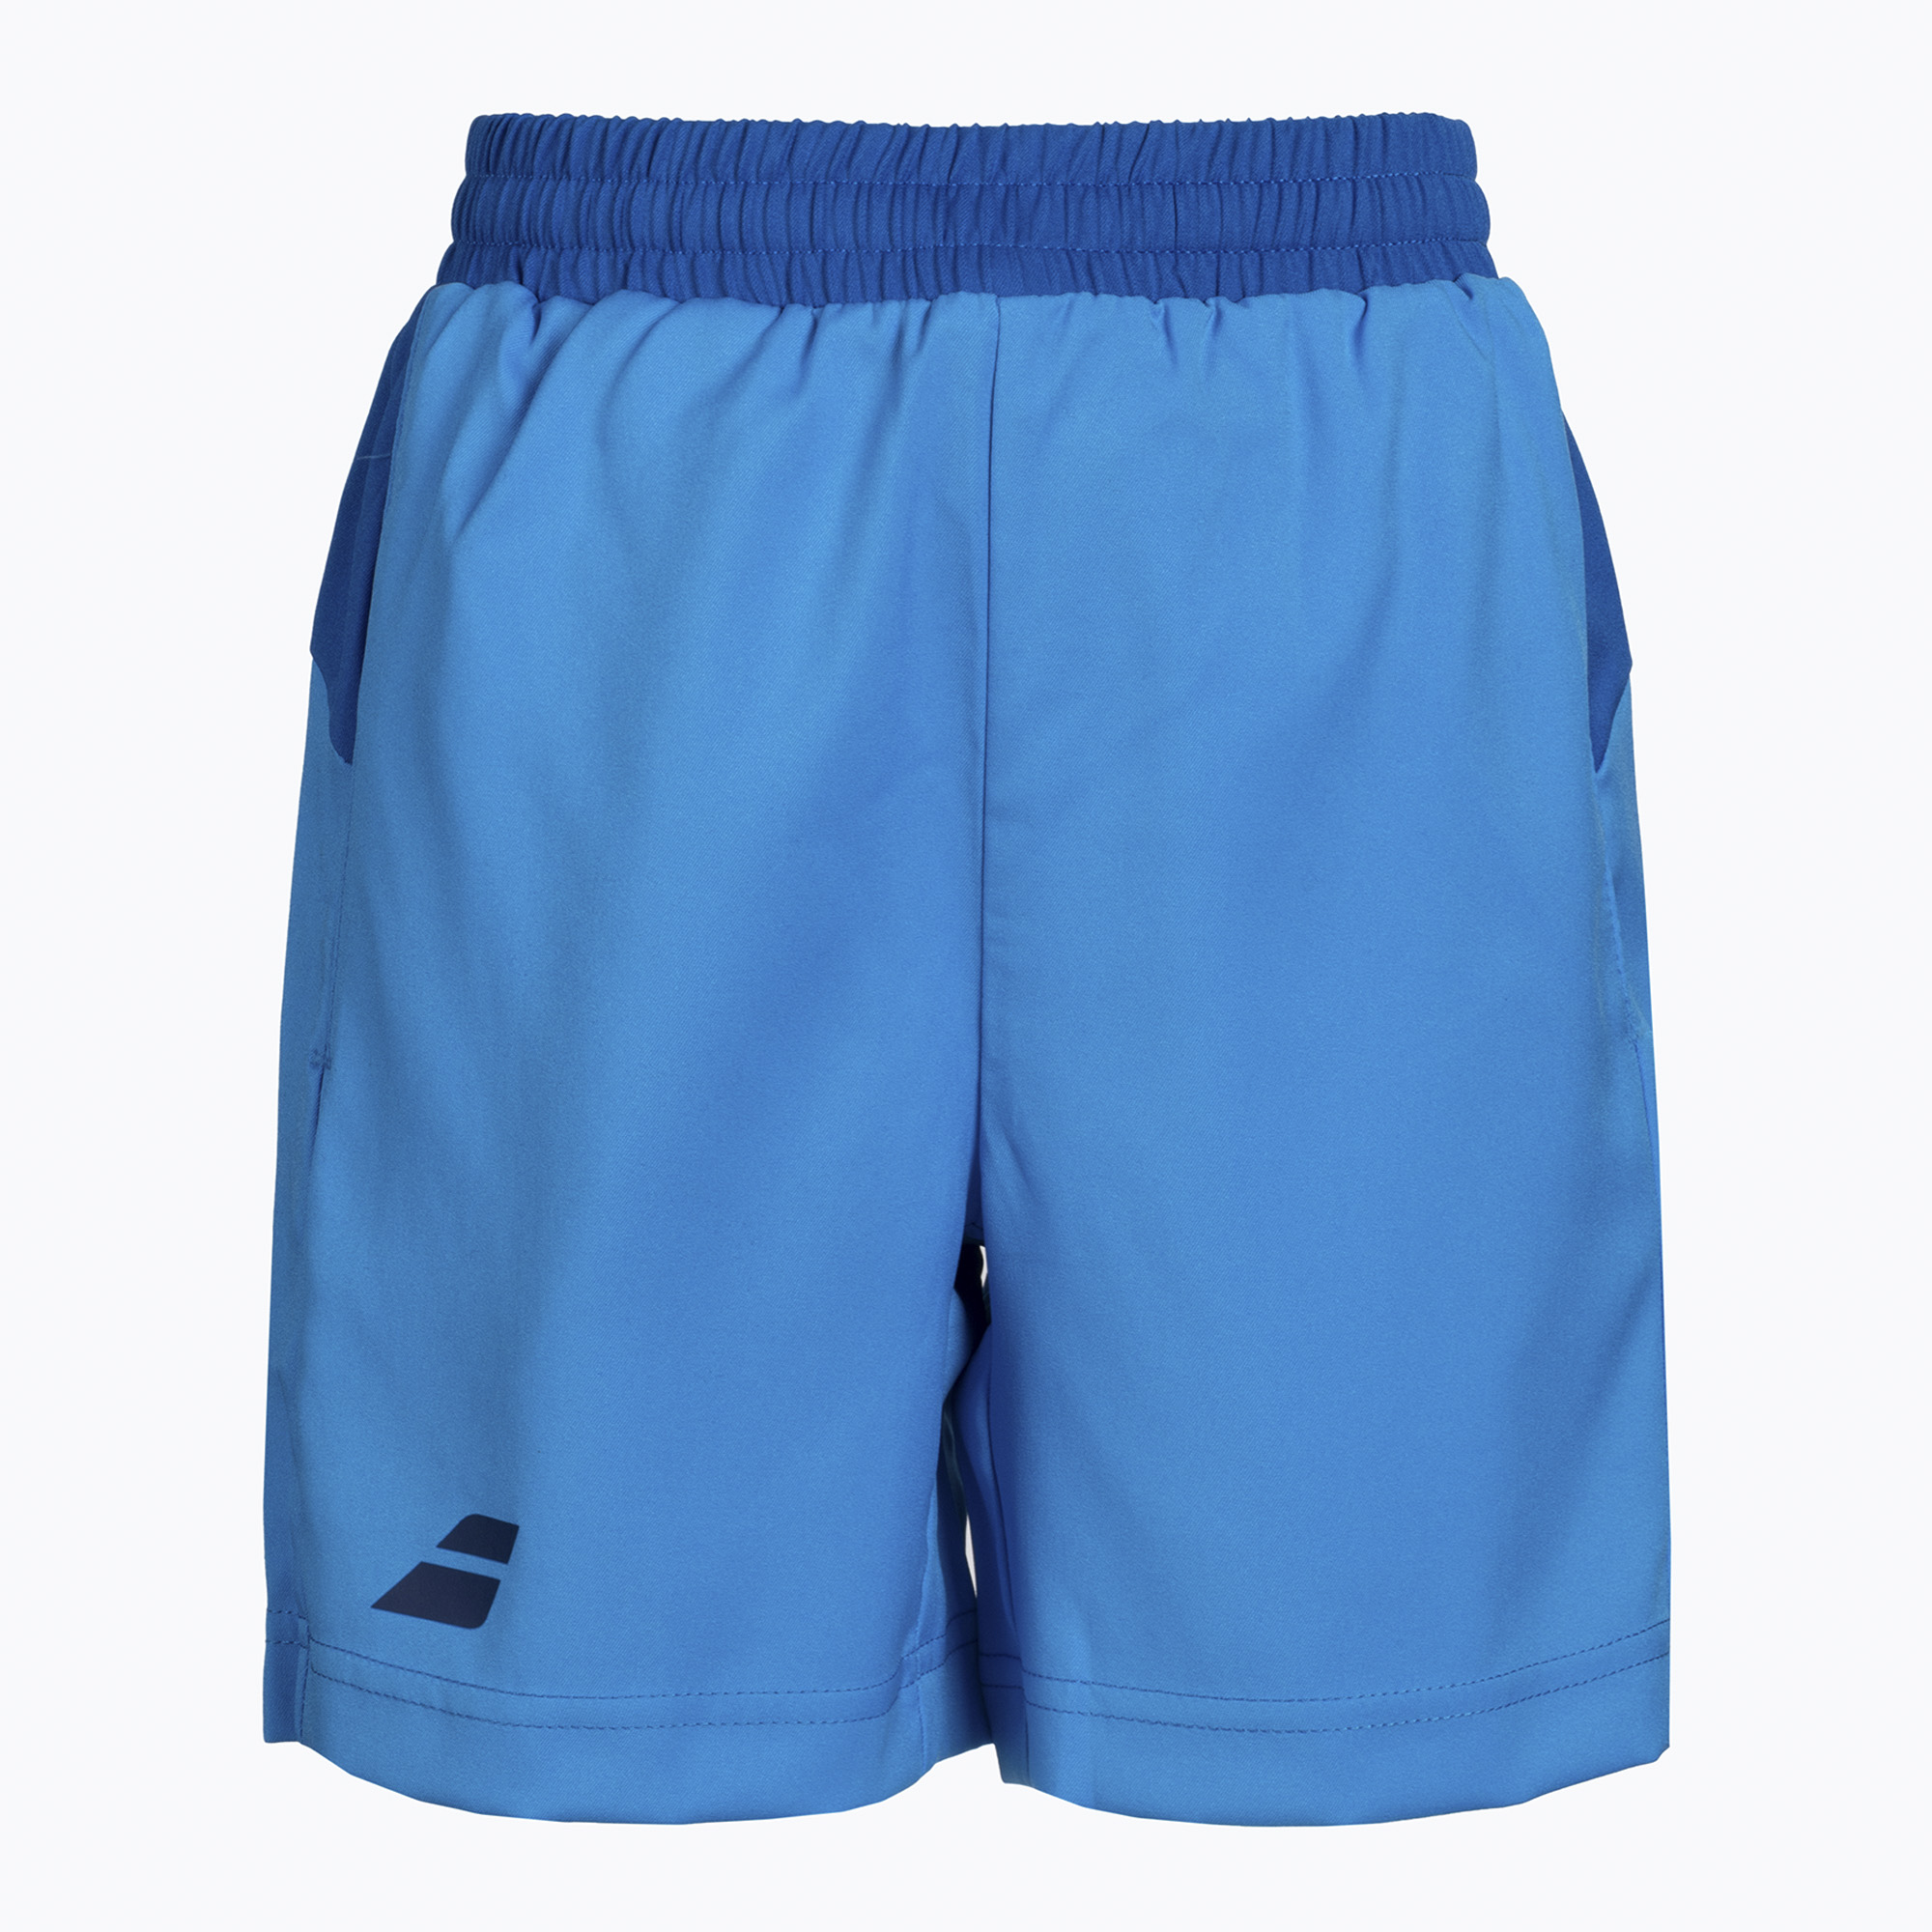 Detské tenisové šortky Babolat Play modré 3BP1061